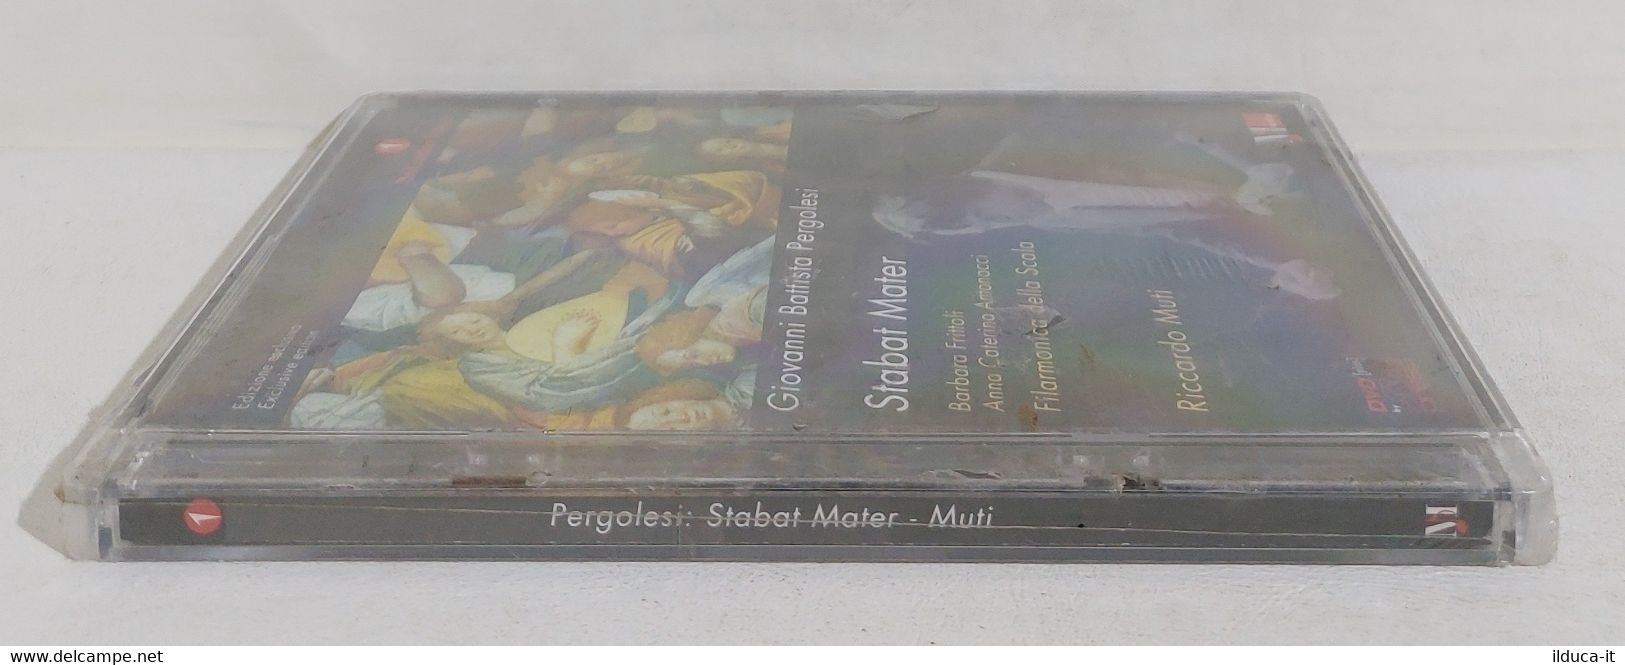 I109555 DVD - Pergolesi - STABAT MATER - Riccardo Muti 2000 - Concert Et Musique